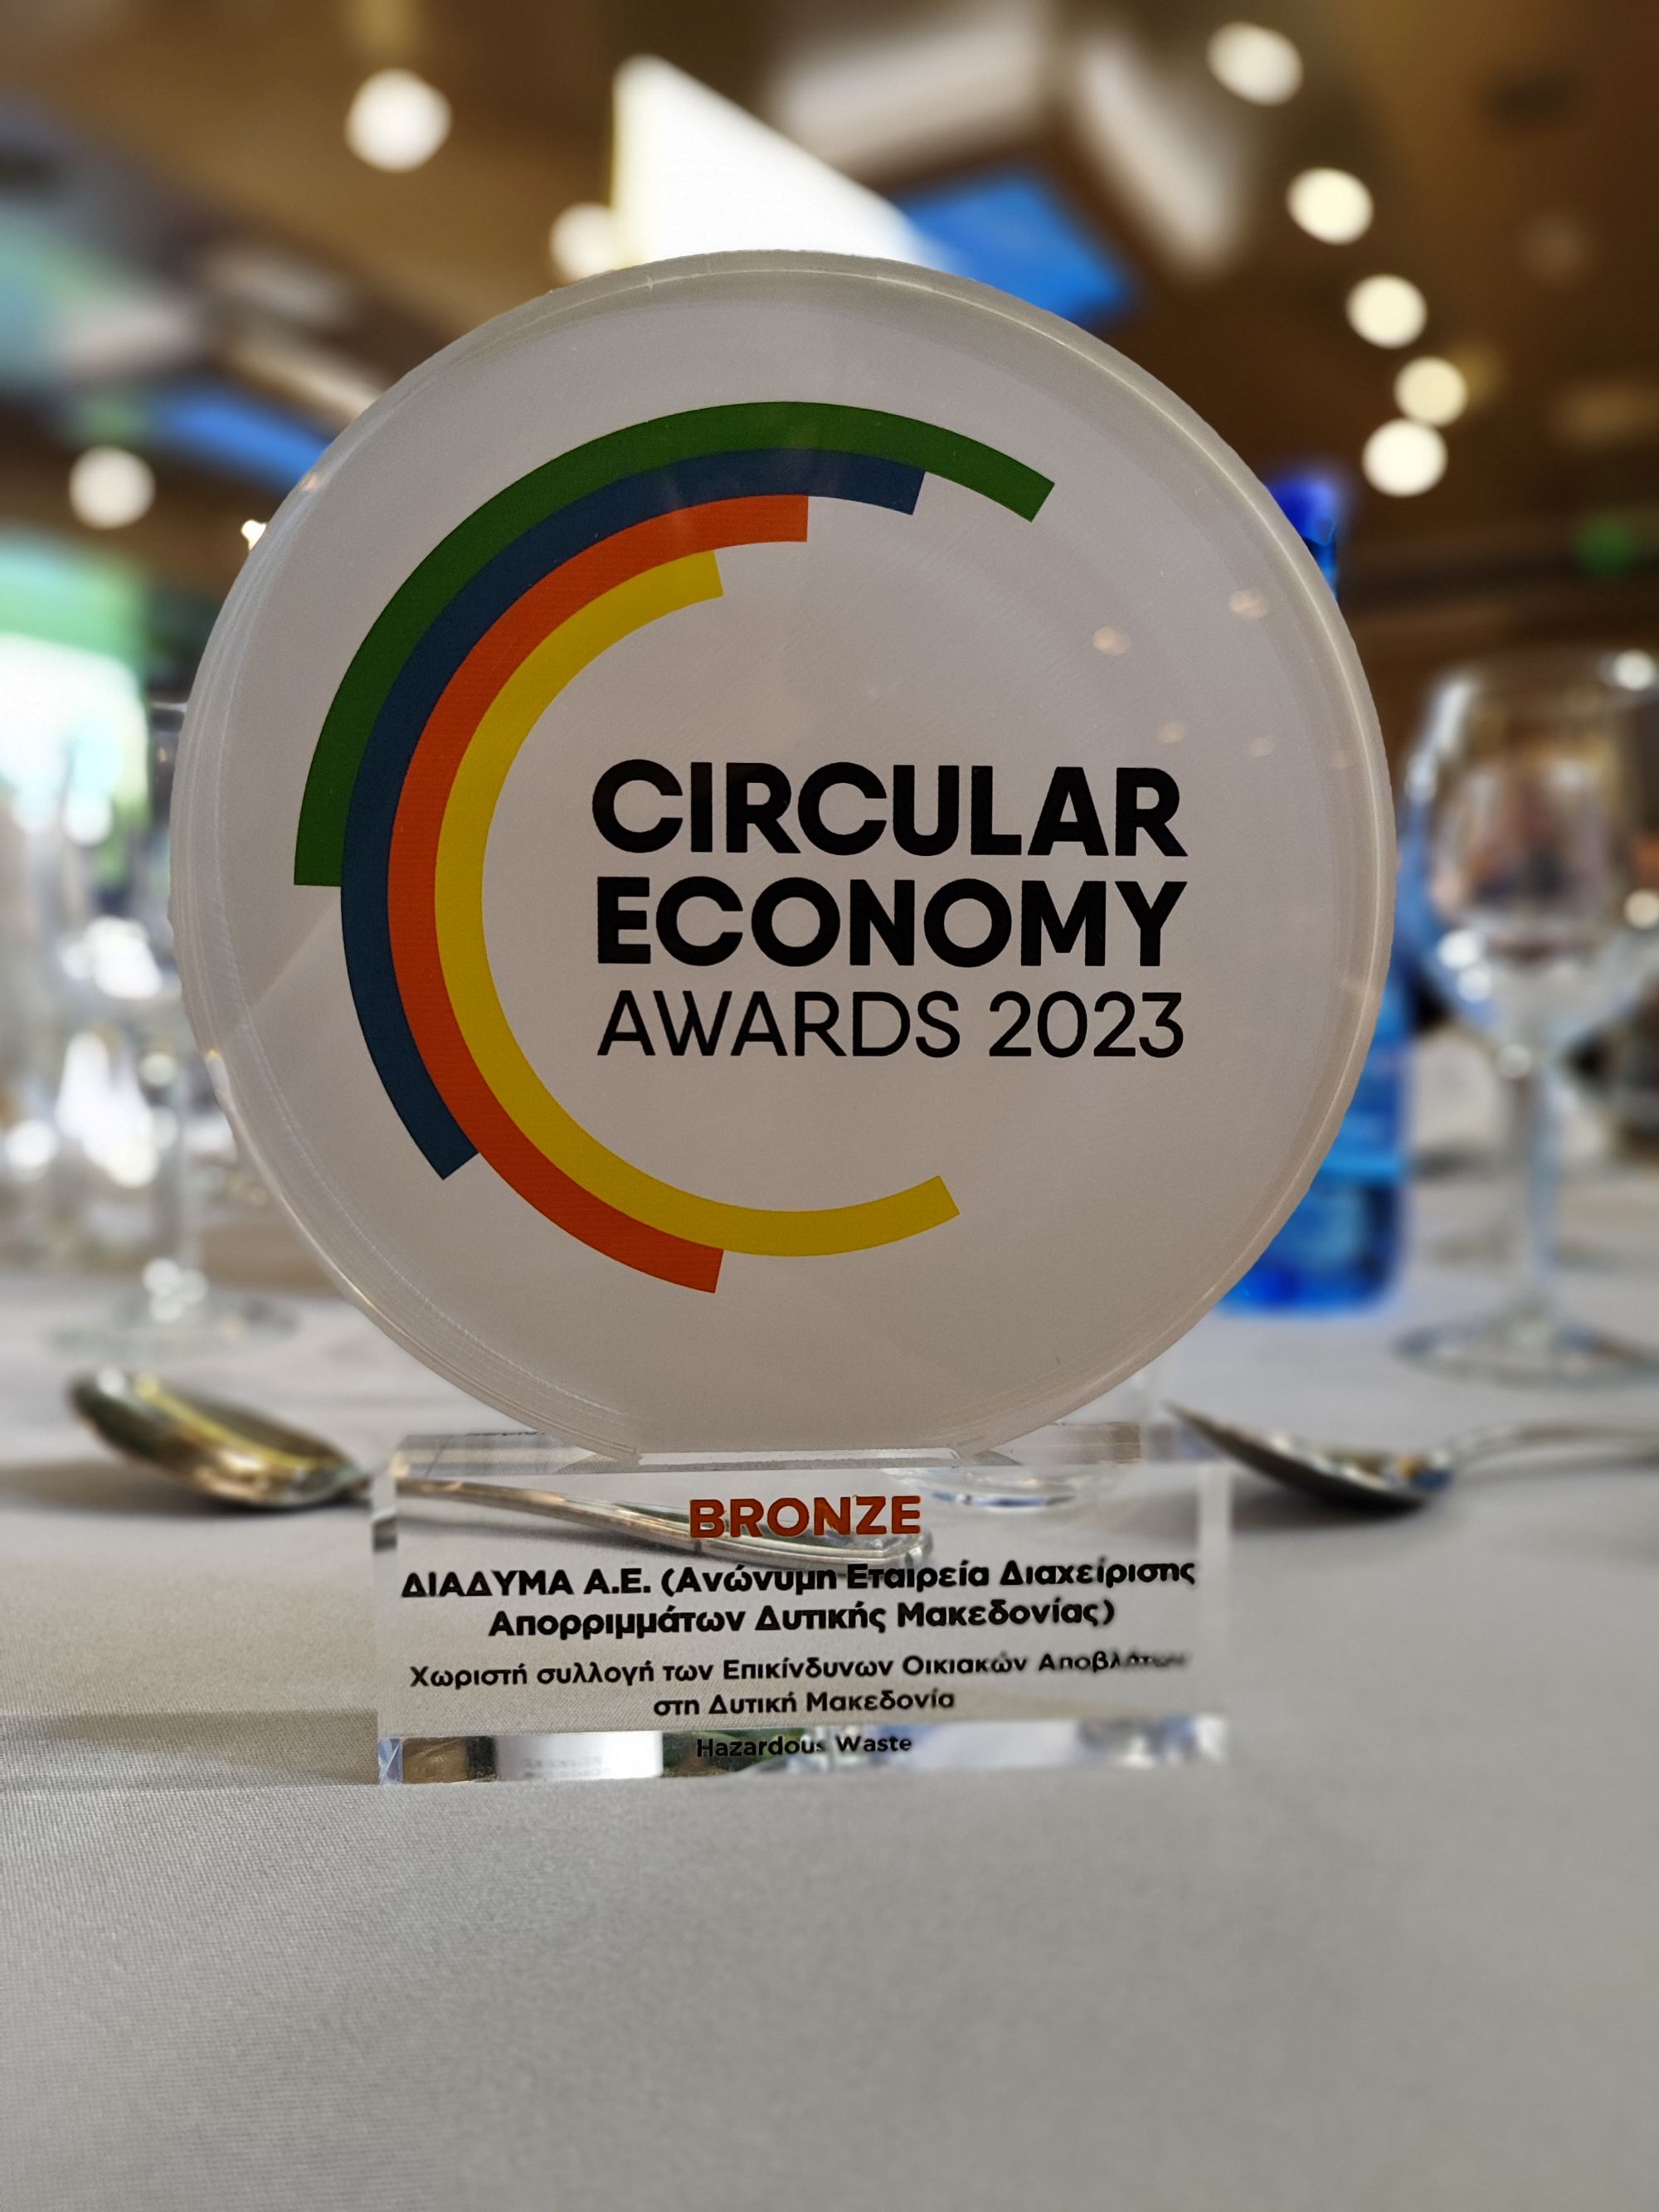 Βράβευση για τη χωριστή συλλογή των επικίνδυνων οικιακών αποβλήτων, της ΔΙΑΔΥΜΑ Α.Ε. στα Circular Economy Awards 2023